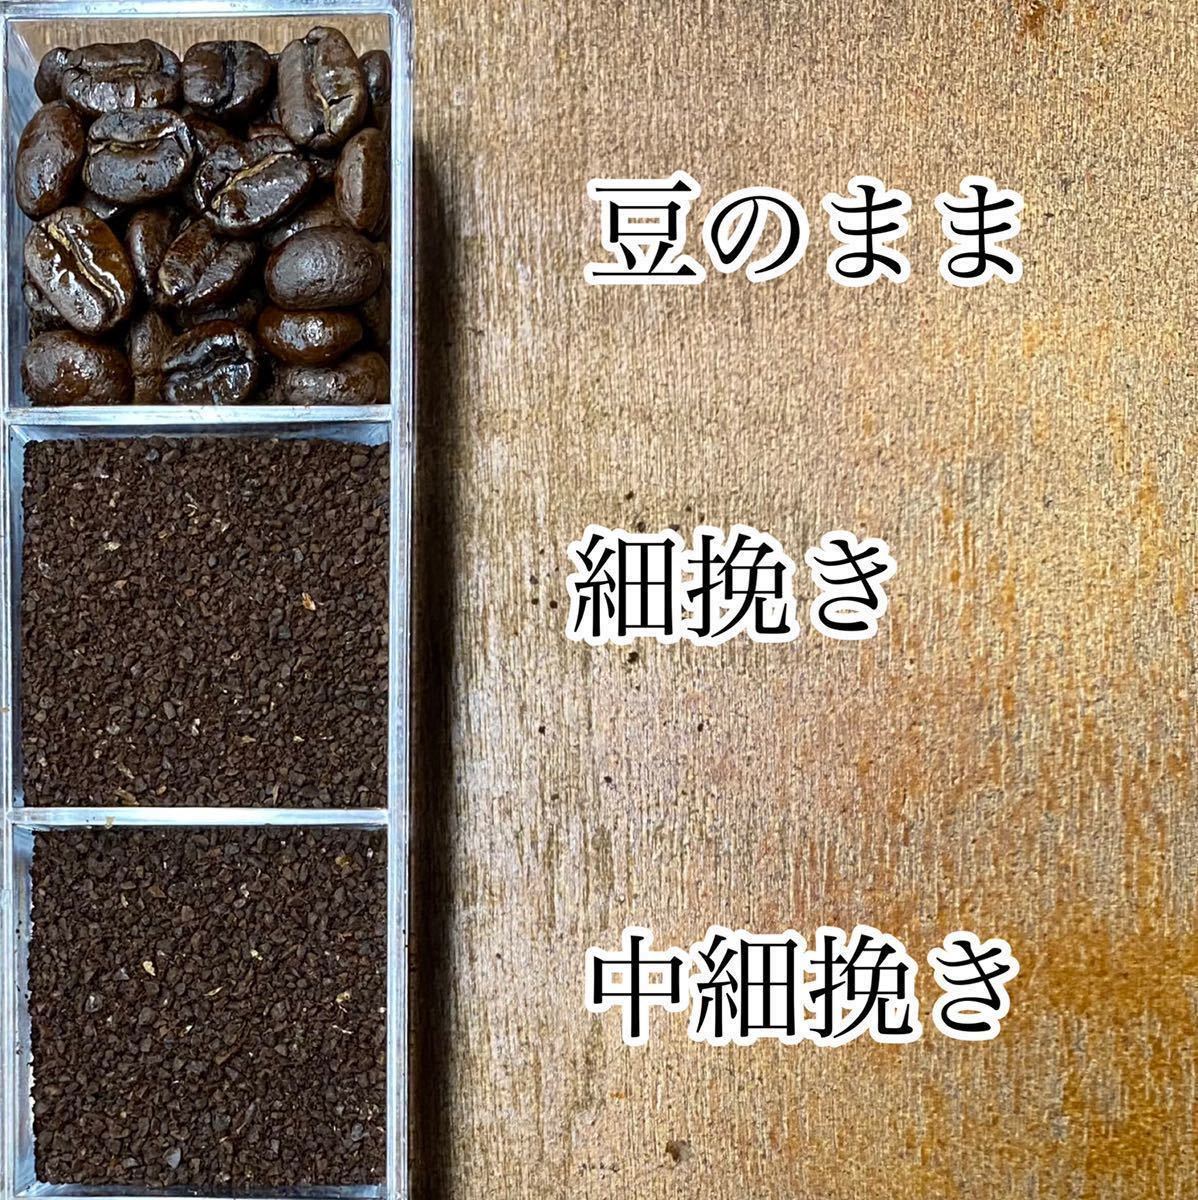 夏限定ブレンドセットB 自家焙煎コーヒー豆3種(100g×3個)